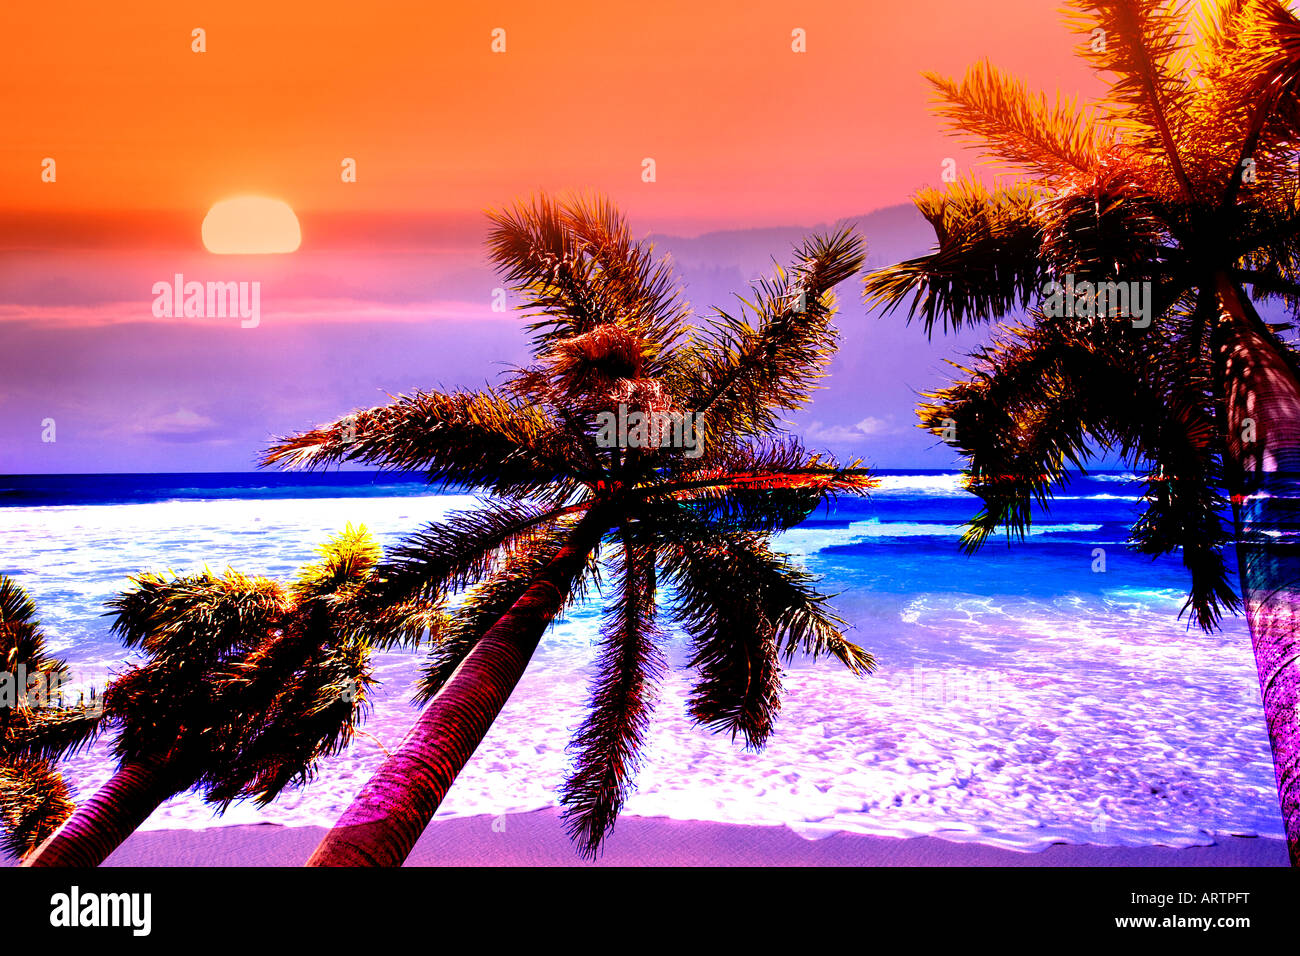 Concetto montage immagine di una scena tropicale con palme Sunset beach e forme d'onda distorta con colori saturi Foto Stock